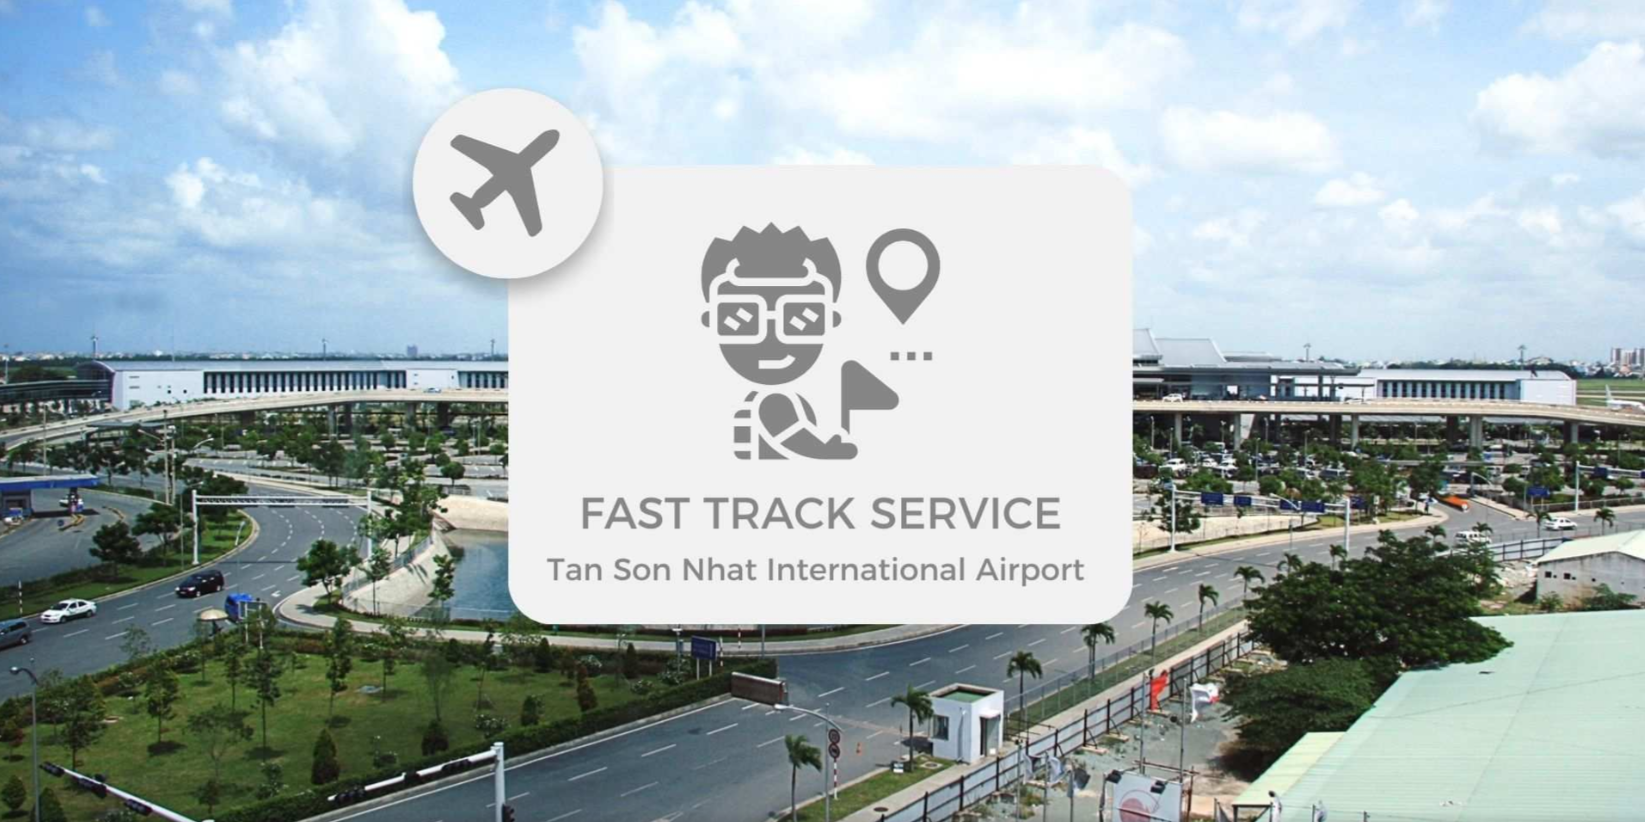 (2일전 예약가능) 베트남 탄손누트 국제공항(SGN) | 호치민 공항 패스트 트랙 서비스